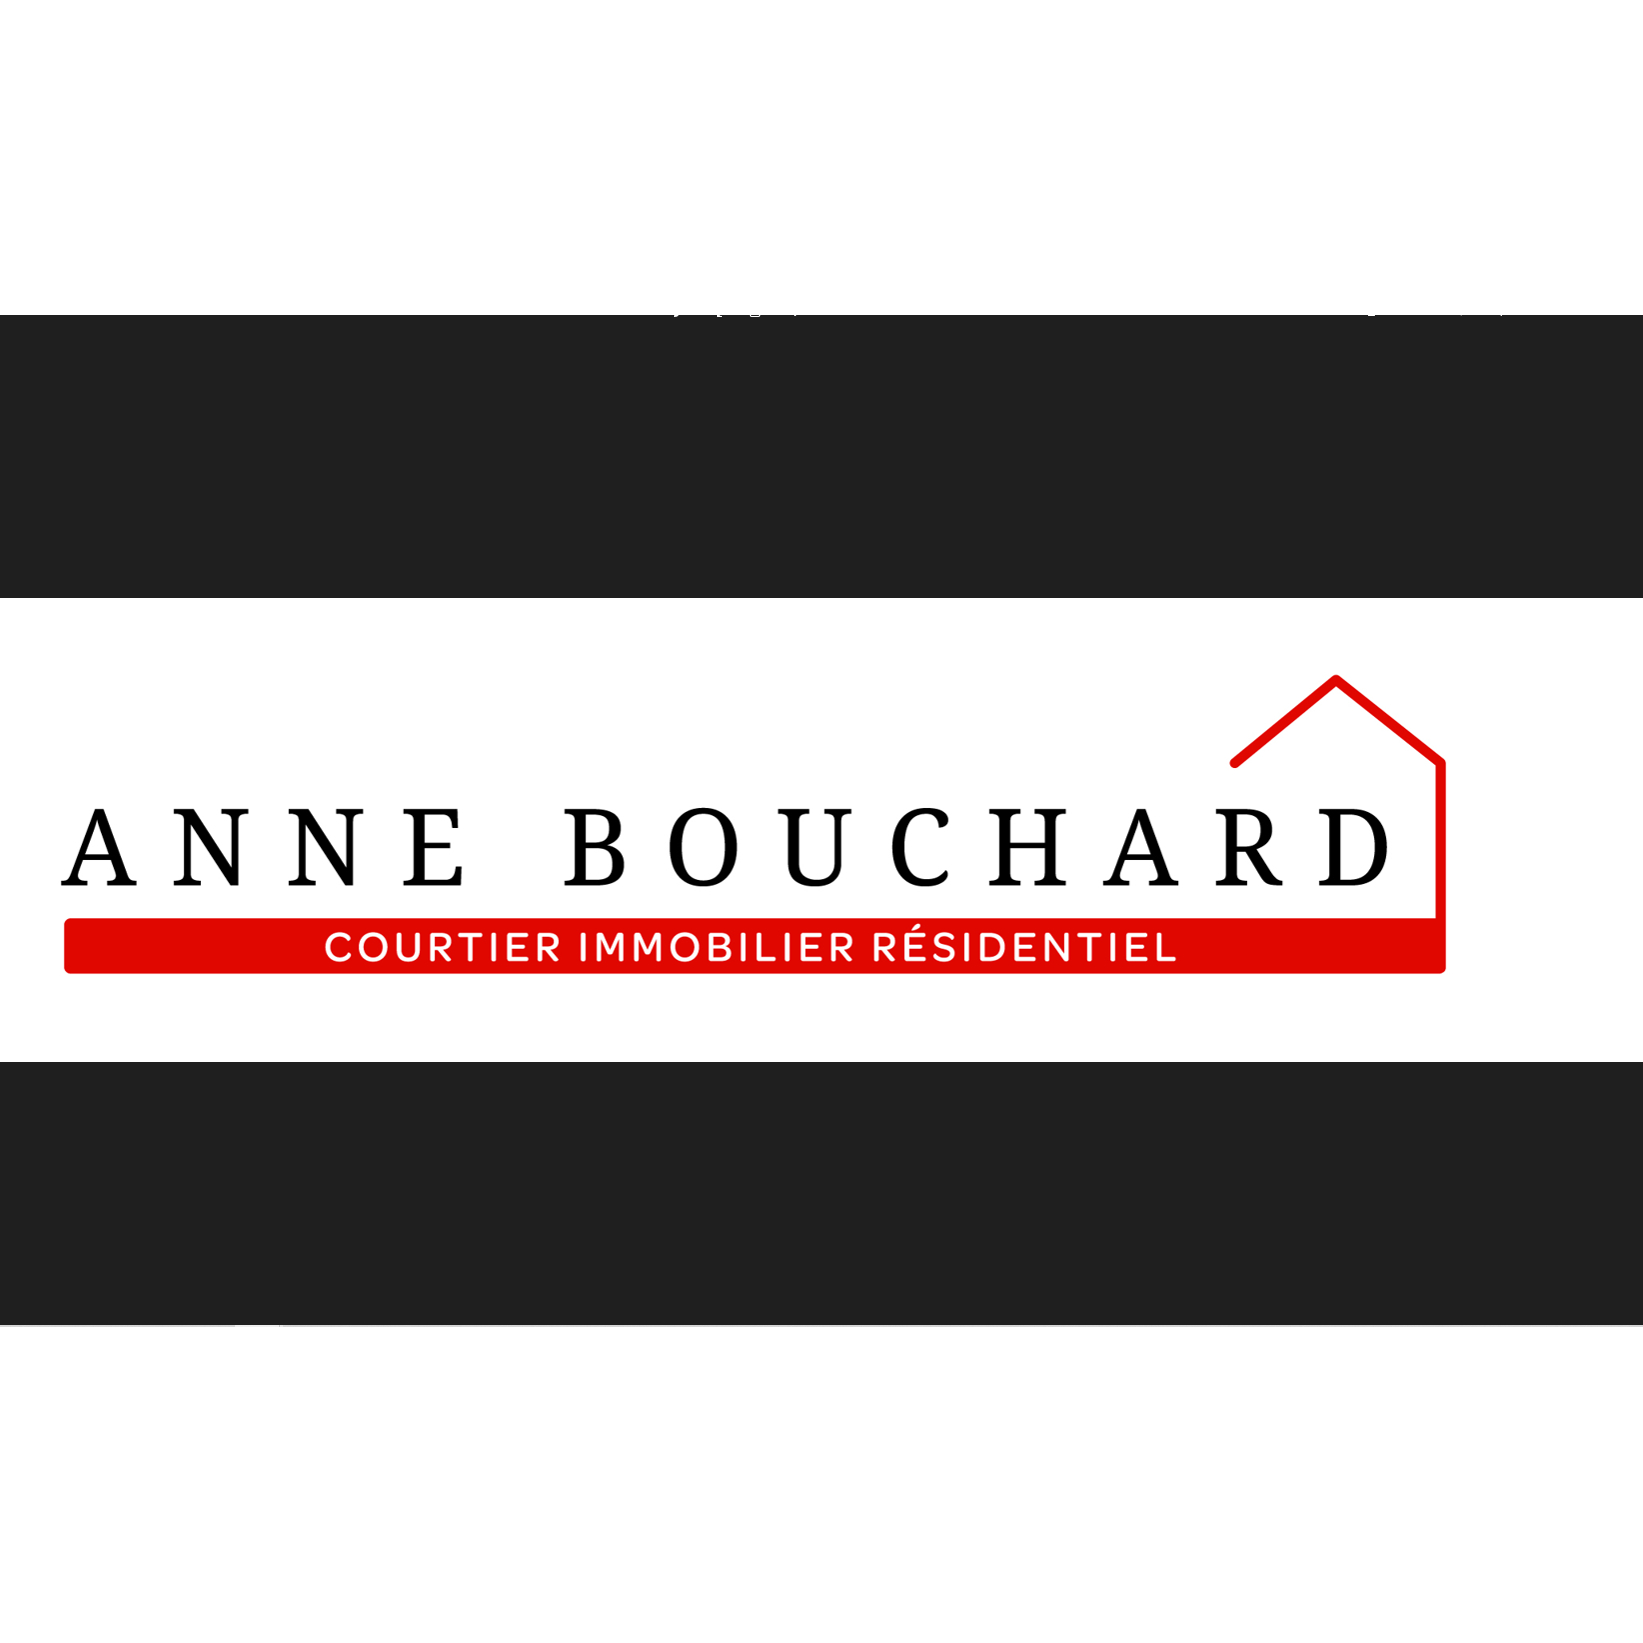 View Anne Bouchard Courtier Immobilier Résidentiel’s Saint-Flavien profile